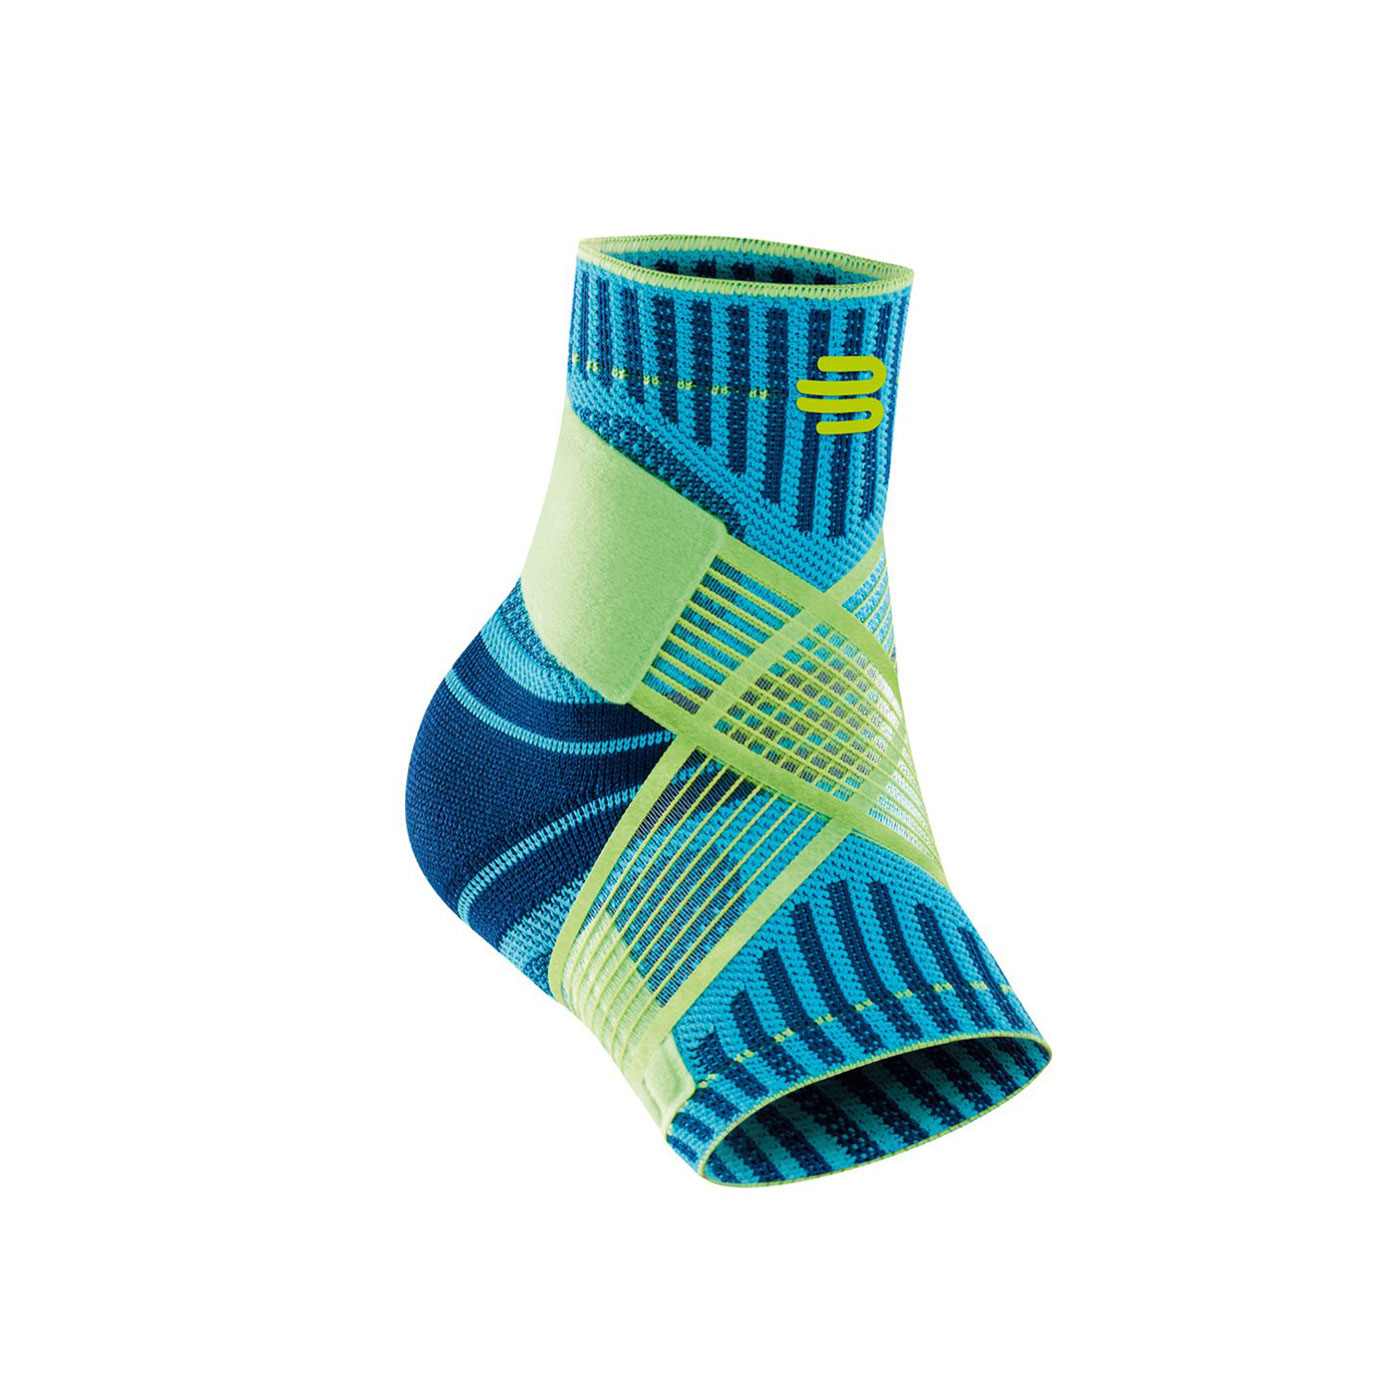 BAUERFEIND保爾範 專業運動支撐帶型護踝(左腳) 11419401260-71 - 水藍螢光綠